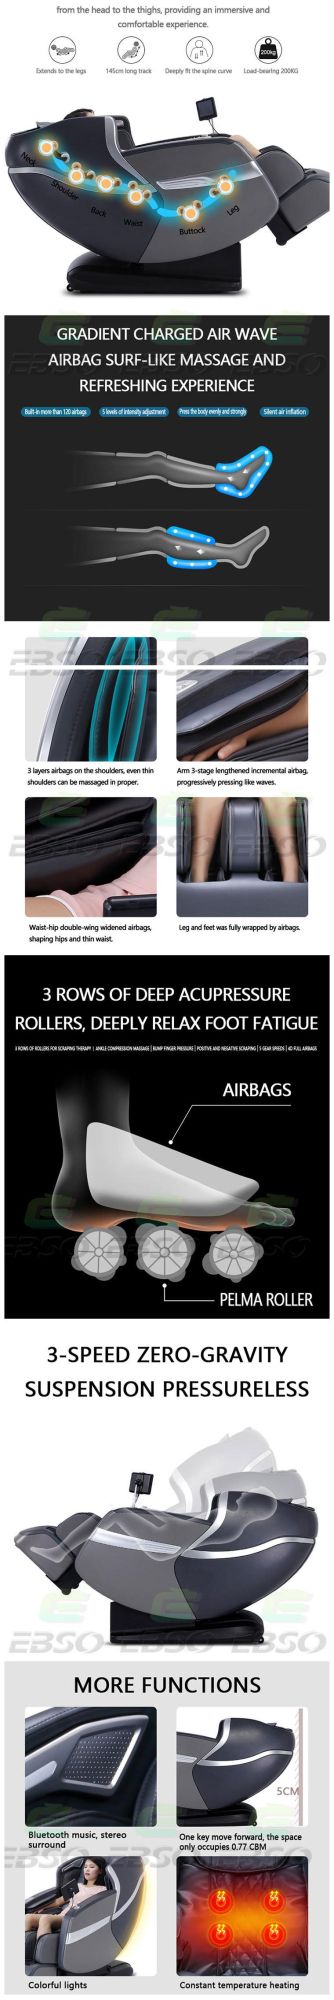 Modern Design Massage Chair Zero Gravity with Stretch